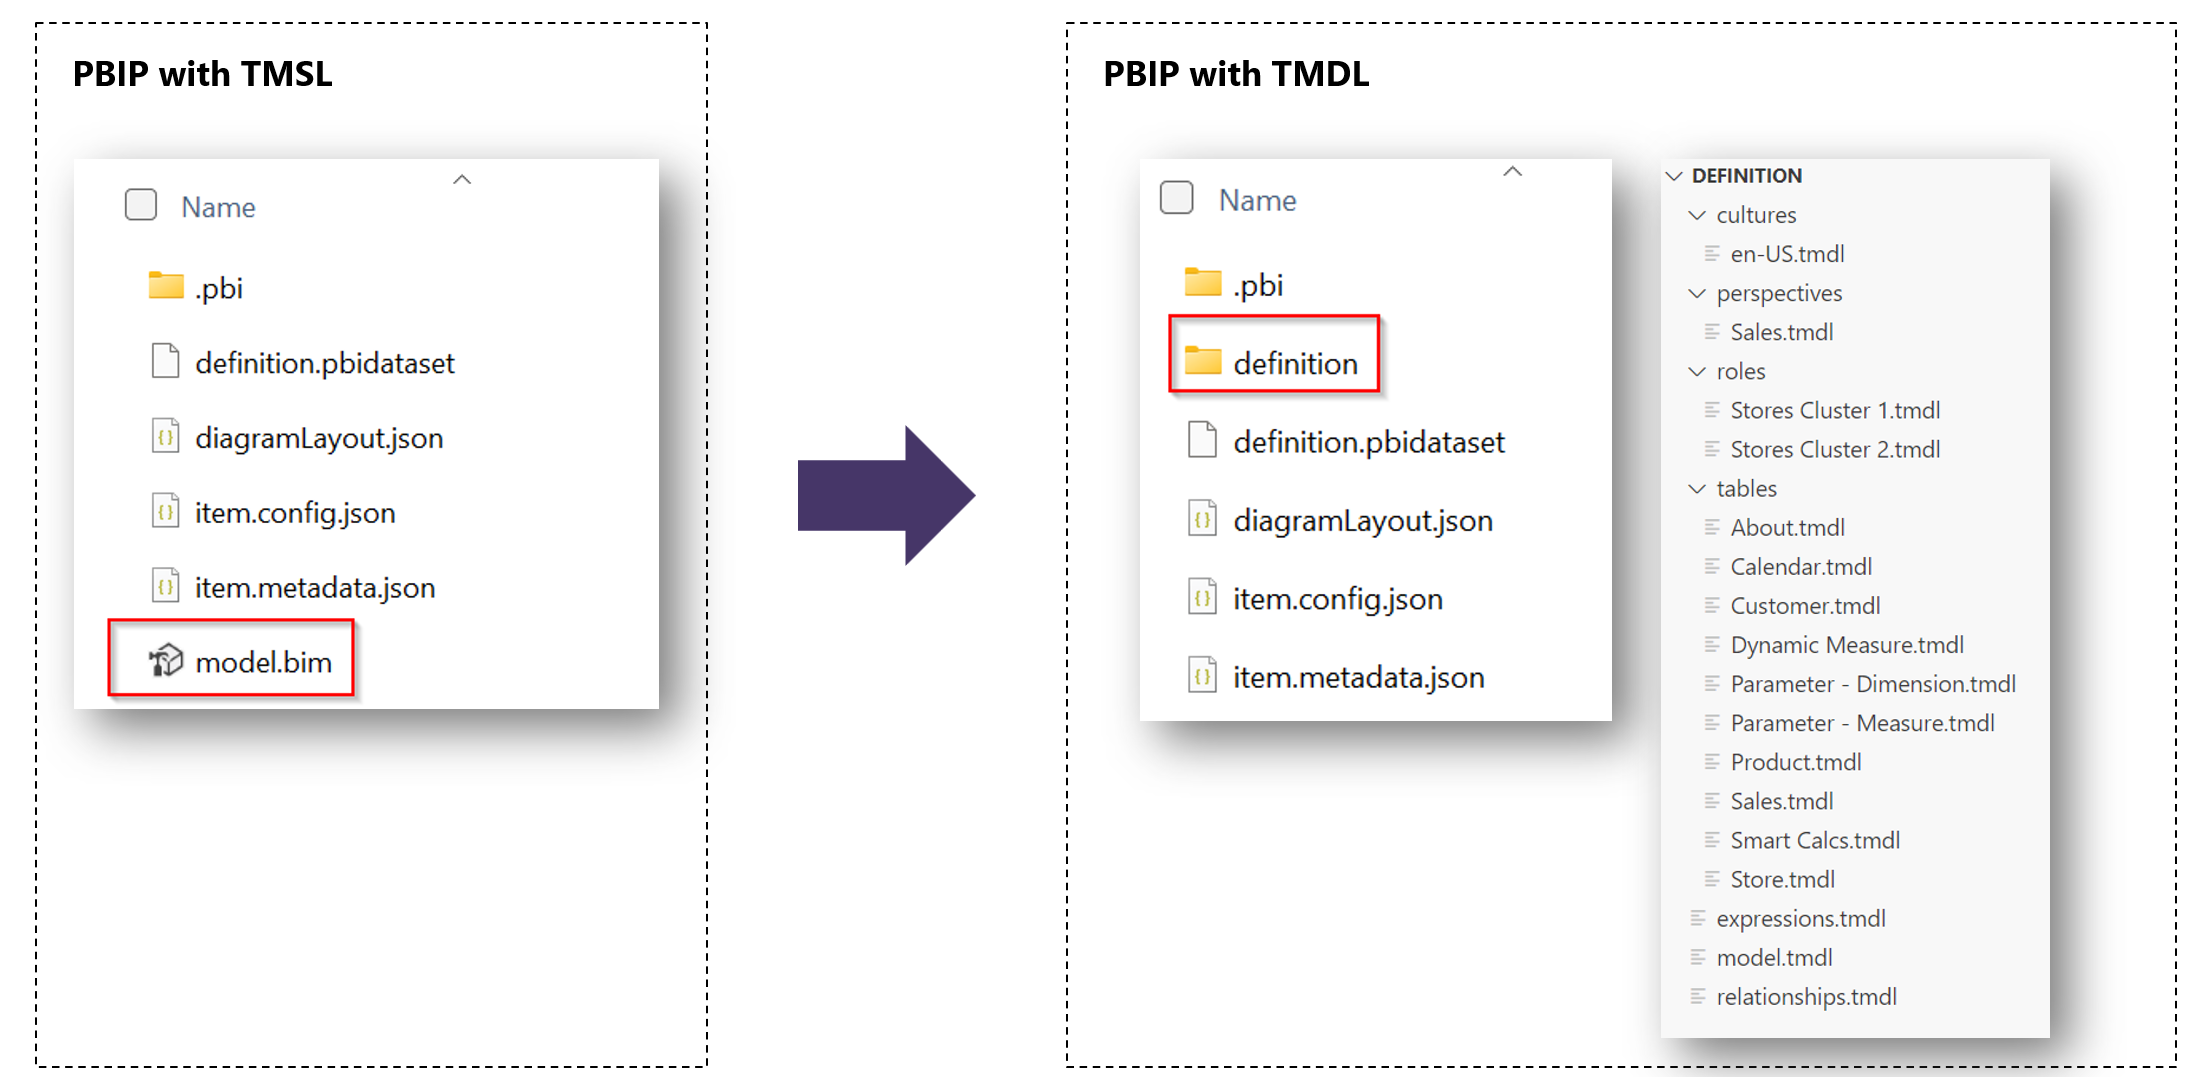 Skærmbillede af PBIP-projekter med TMSL-mapper og med TMDL-mapper.